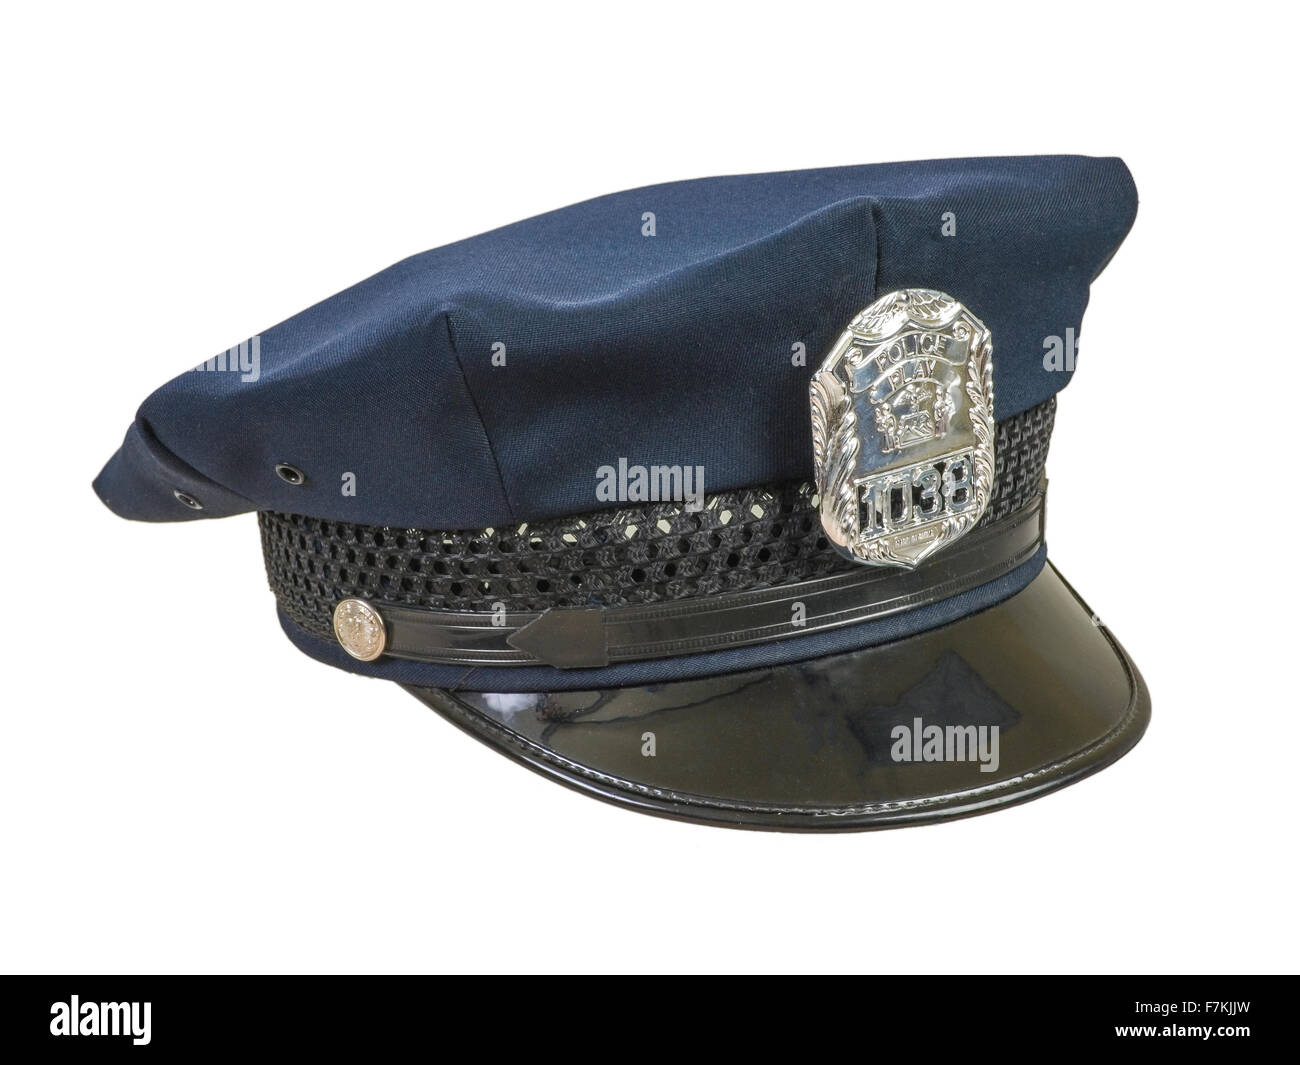 Cómo se llama la gorra de policía?, este es el nombre correcto